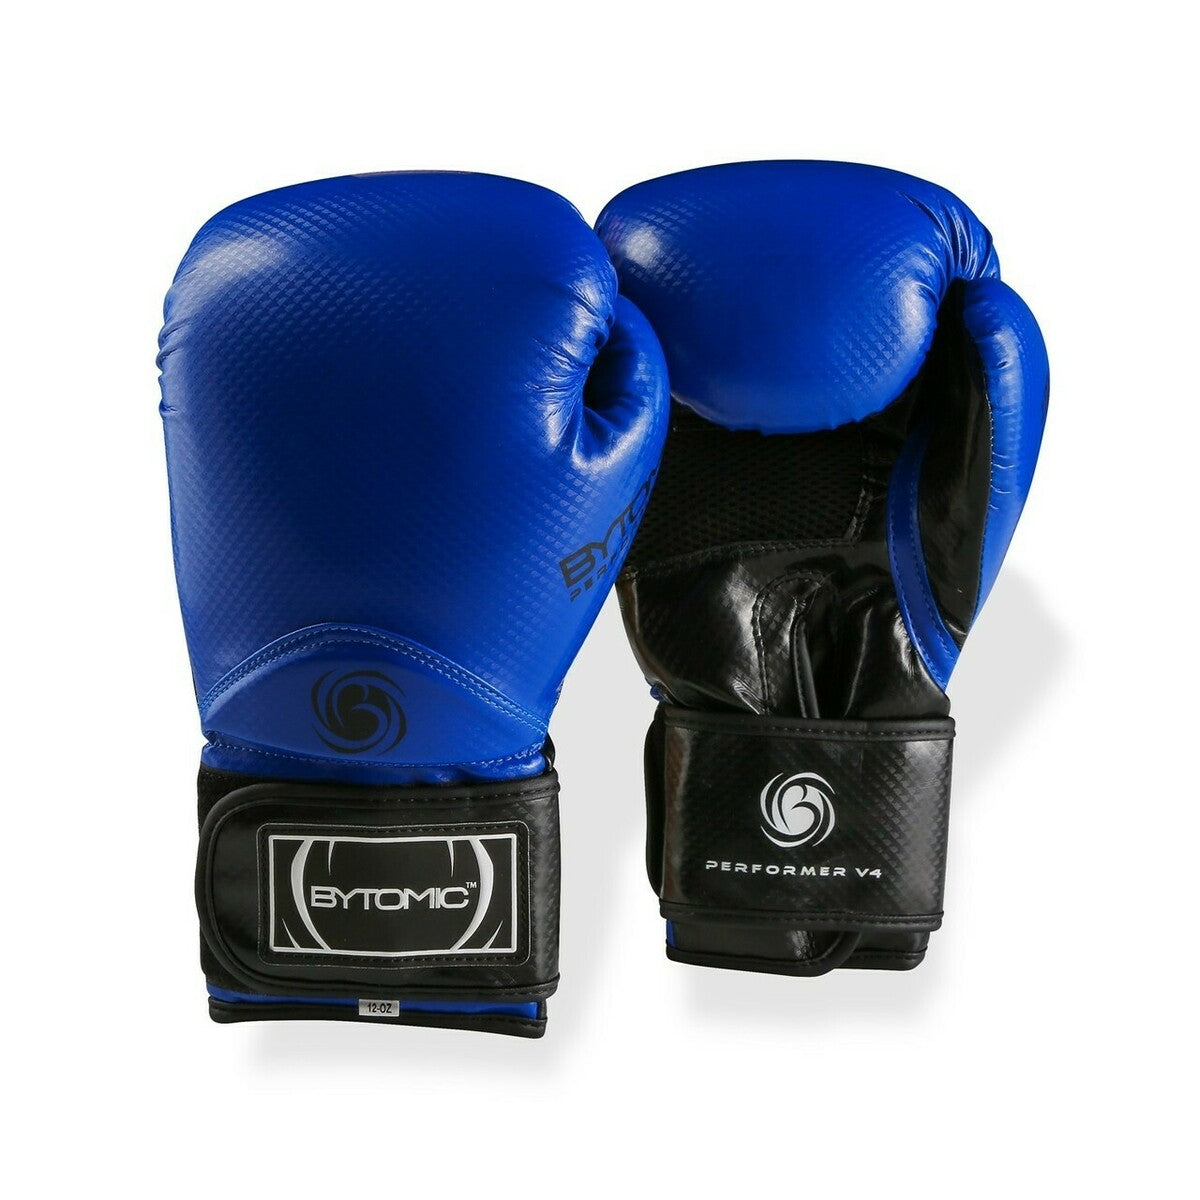 Blue Bytomic Performer V4 Boxing Gloves 10oz  